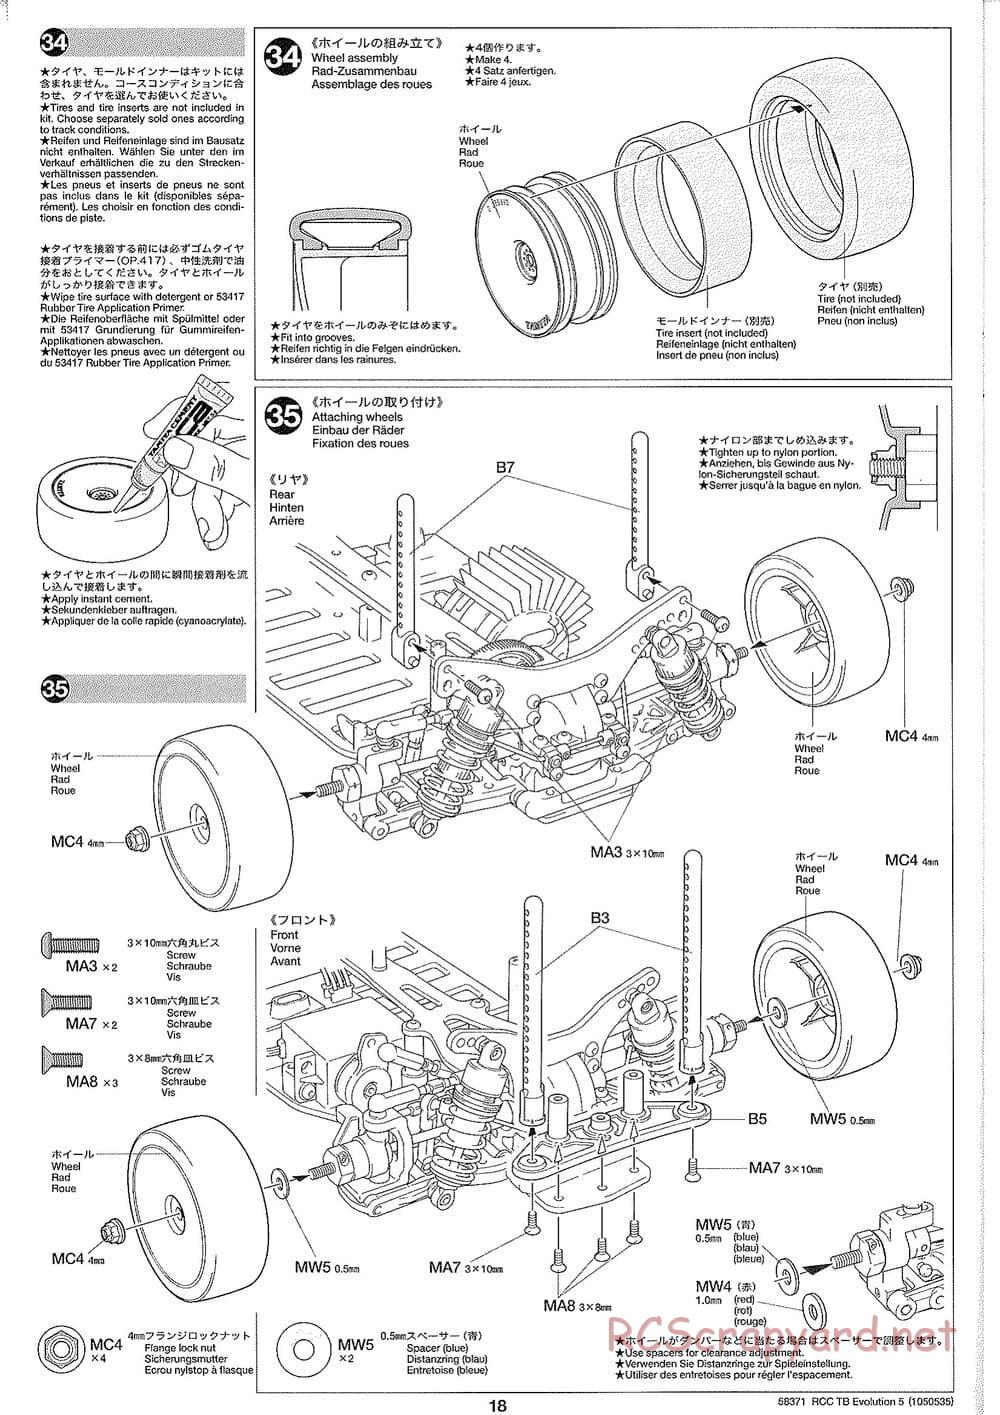 Tamiya - TB Evolution V Chassis - Manual - Page 18